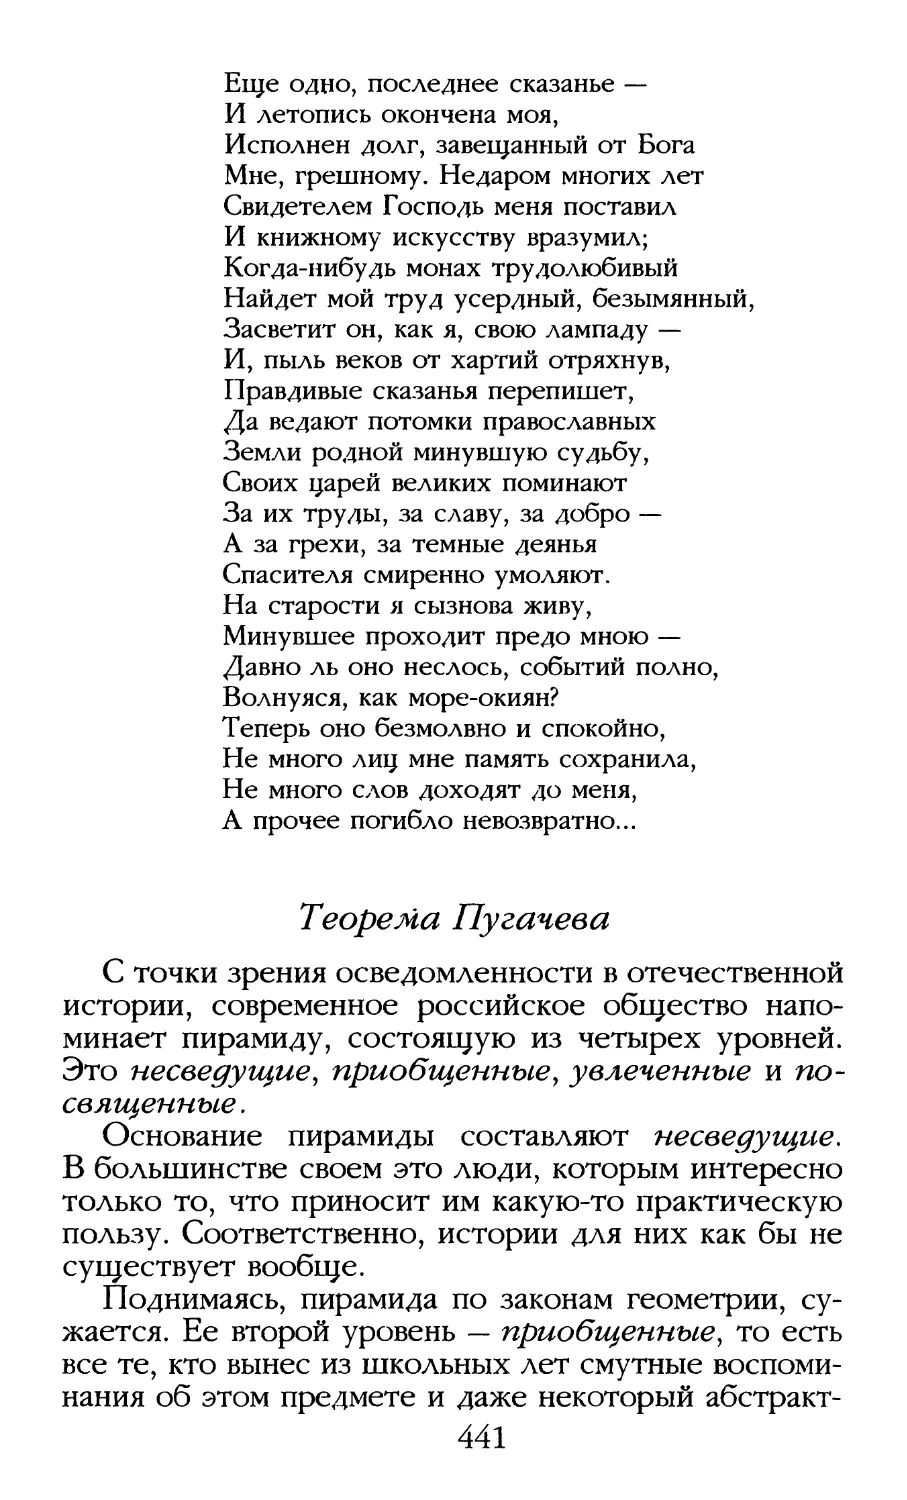 Теорема Пугачева